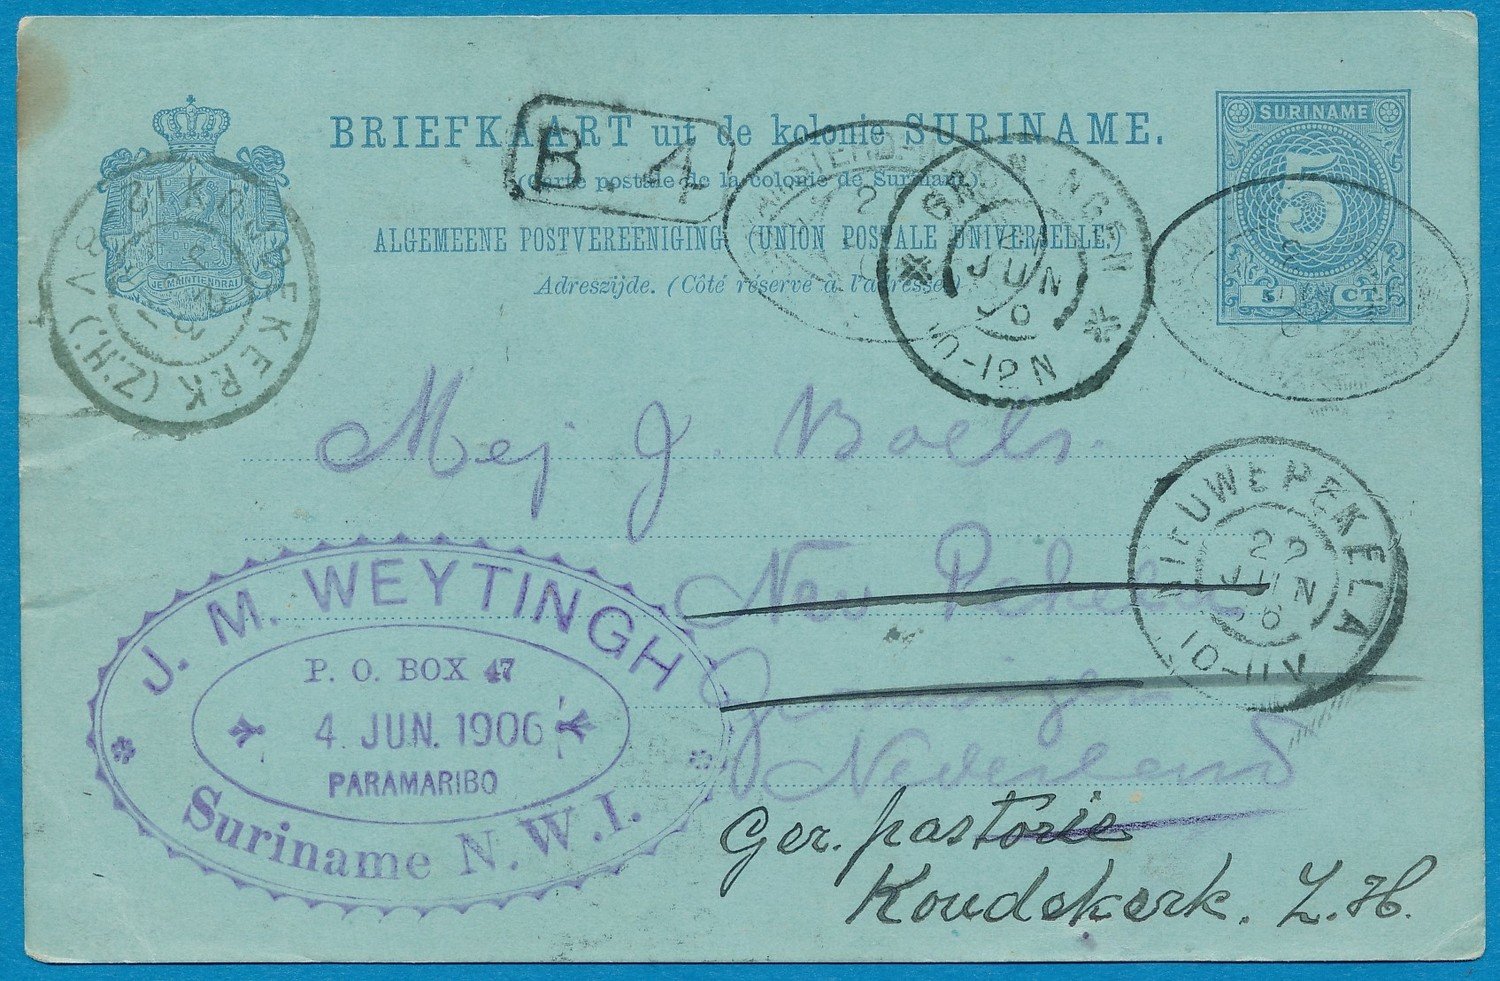 SURINAME briefkaart 1896 Paramaribo naar Nieuwe Pekela